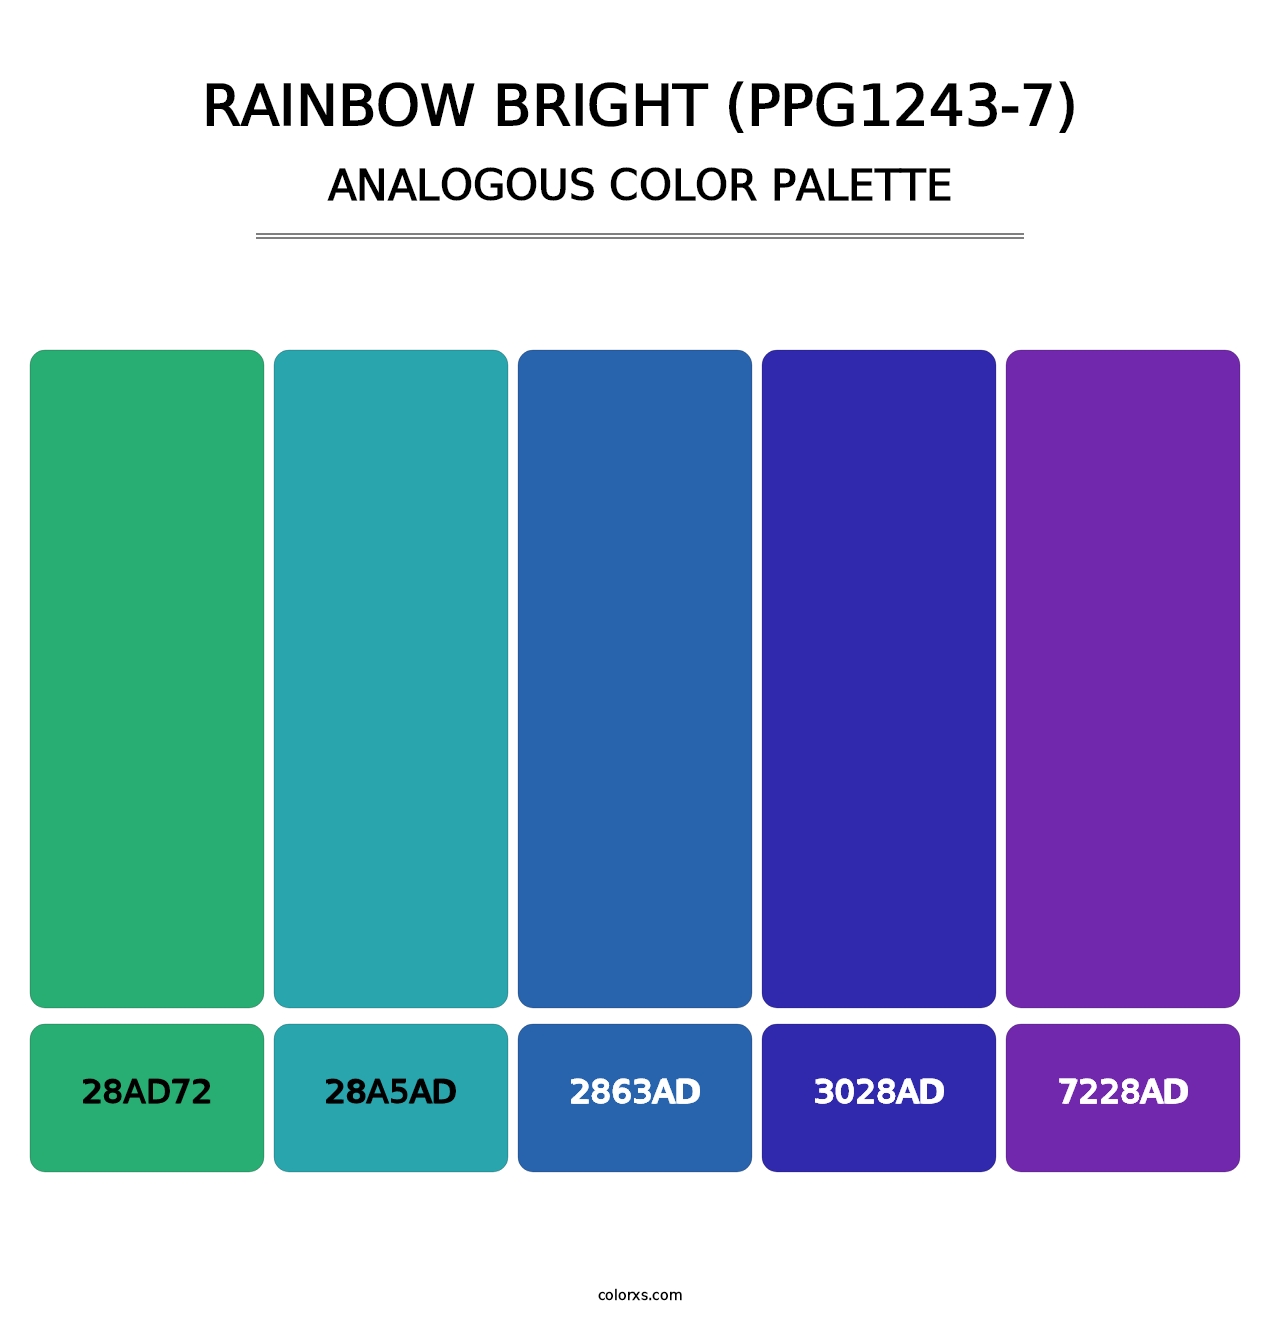 Rainbow Bright (PPG1243-7) - Analogous Color Palette